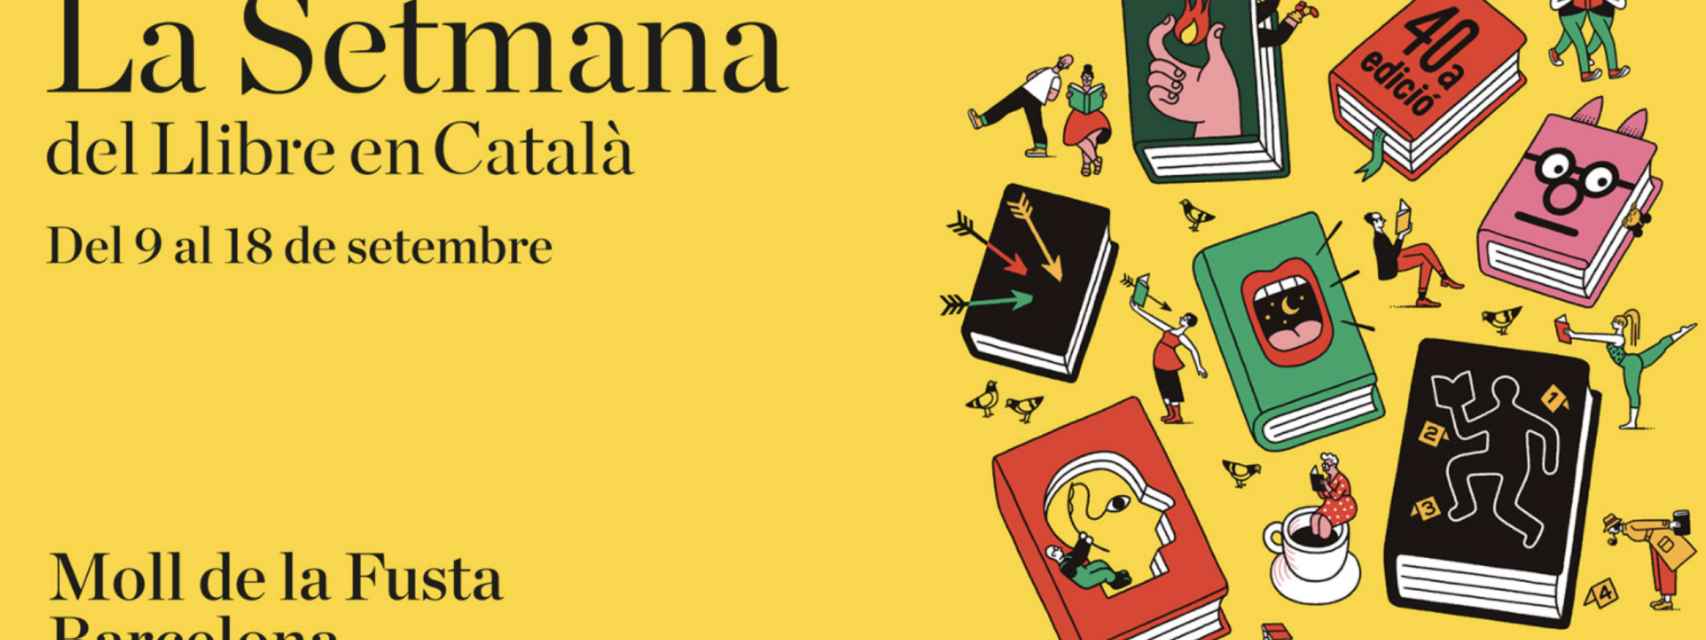 Cartel Promocional de la 'Semana del Libro en catalán'